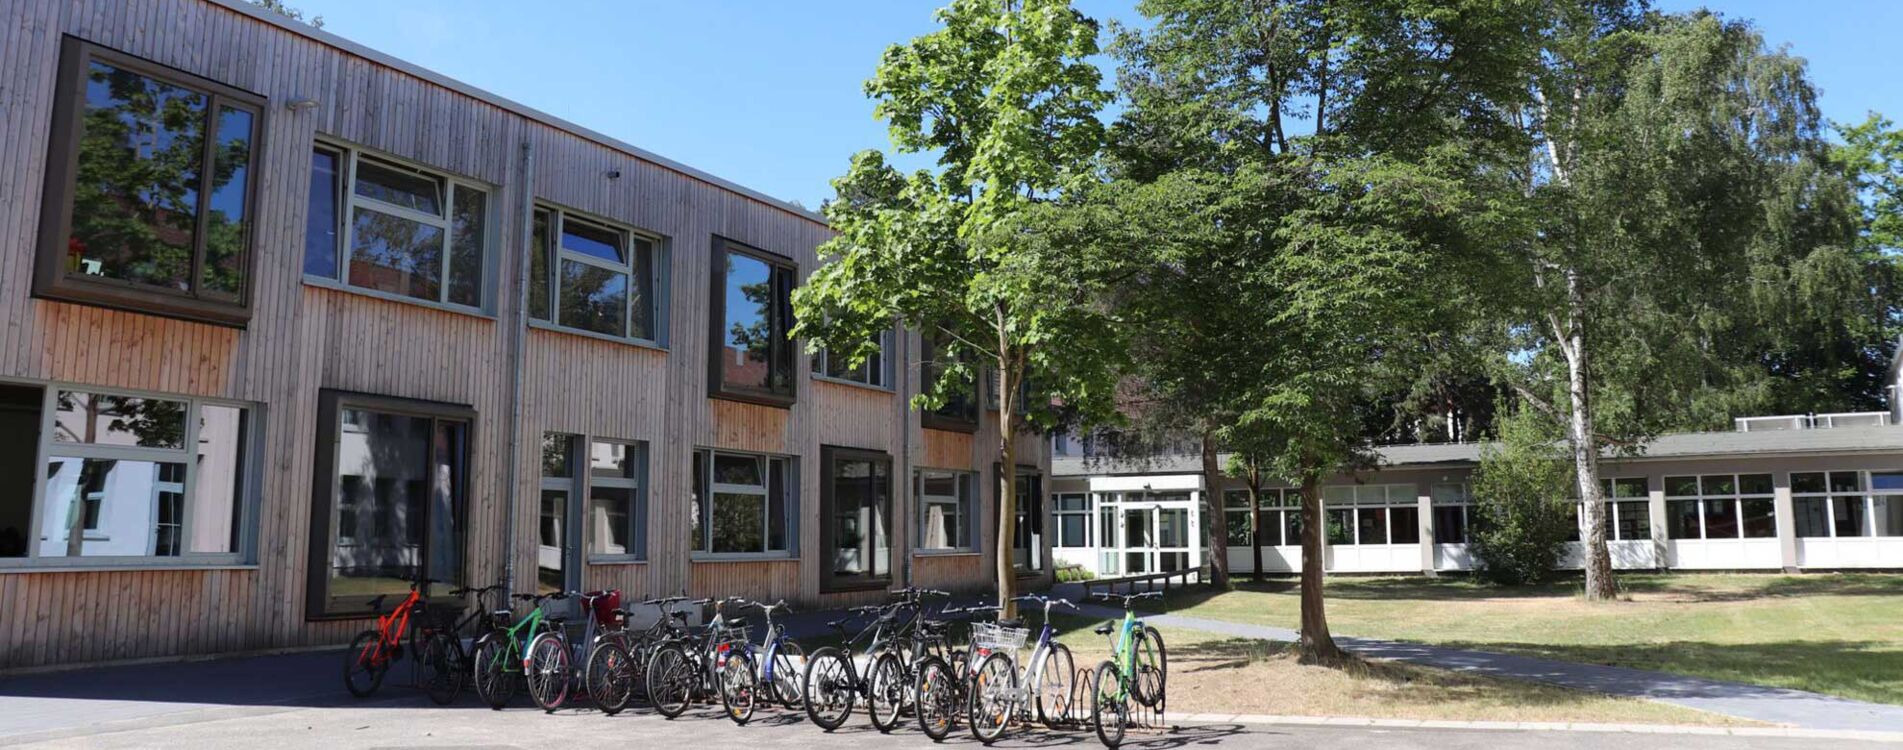 Links im Bild: Das Schulgebäude von vorne. Davor stehen Fahrradständer. Rechts eine Grünfläche mit Bäumen.